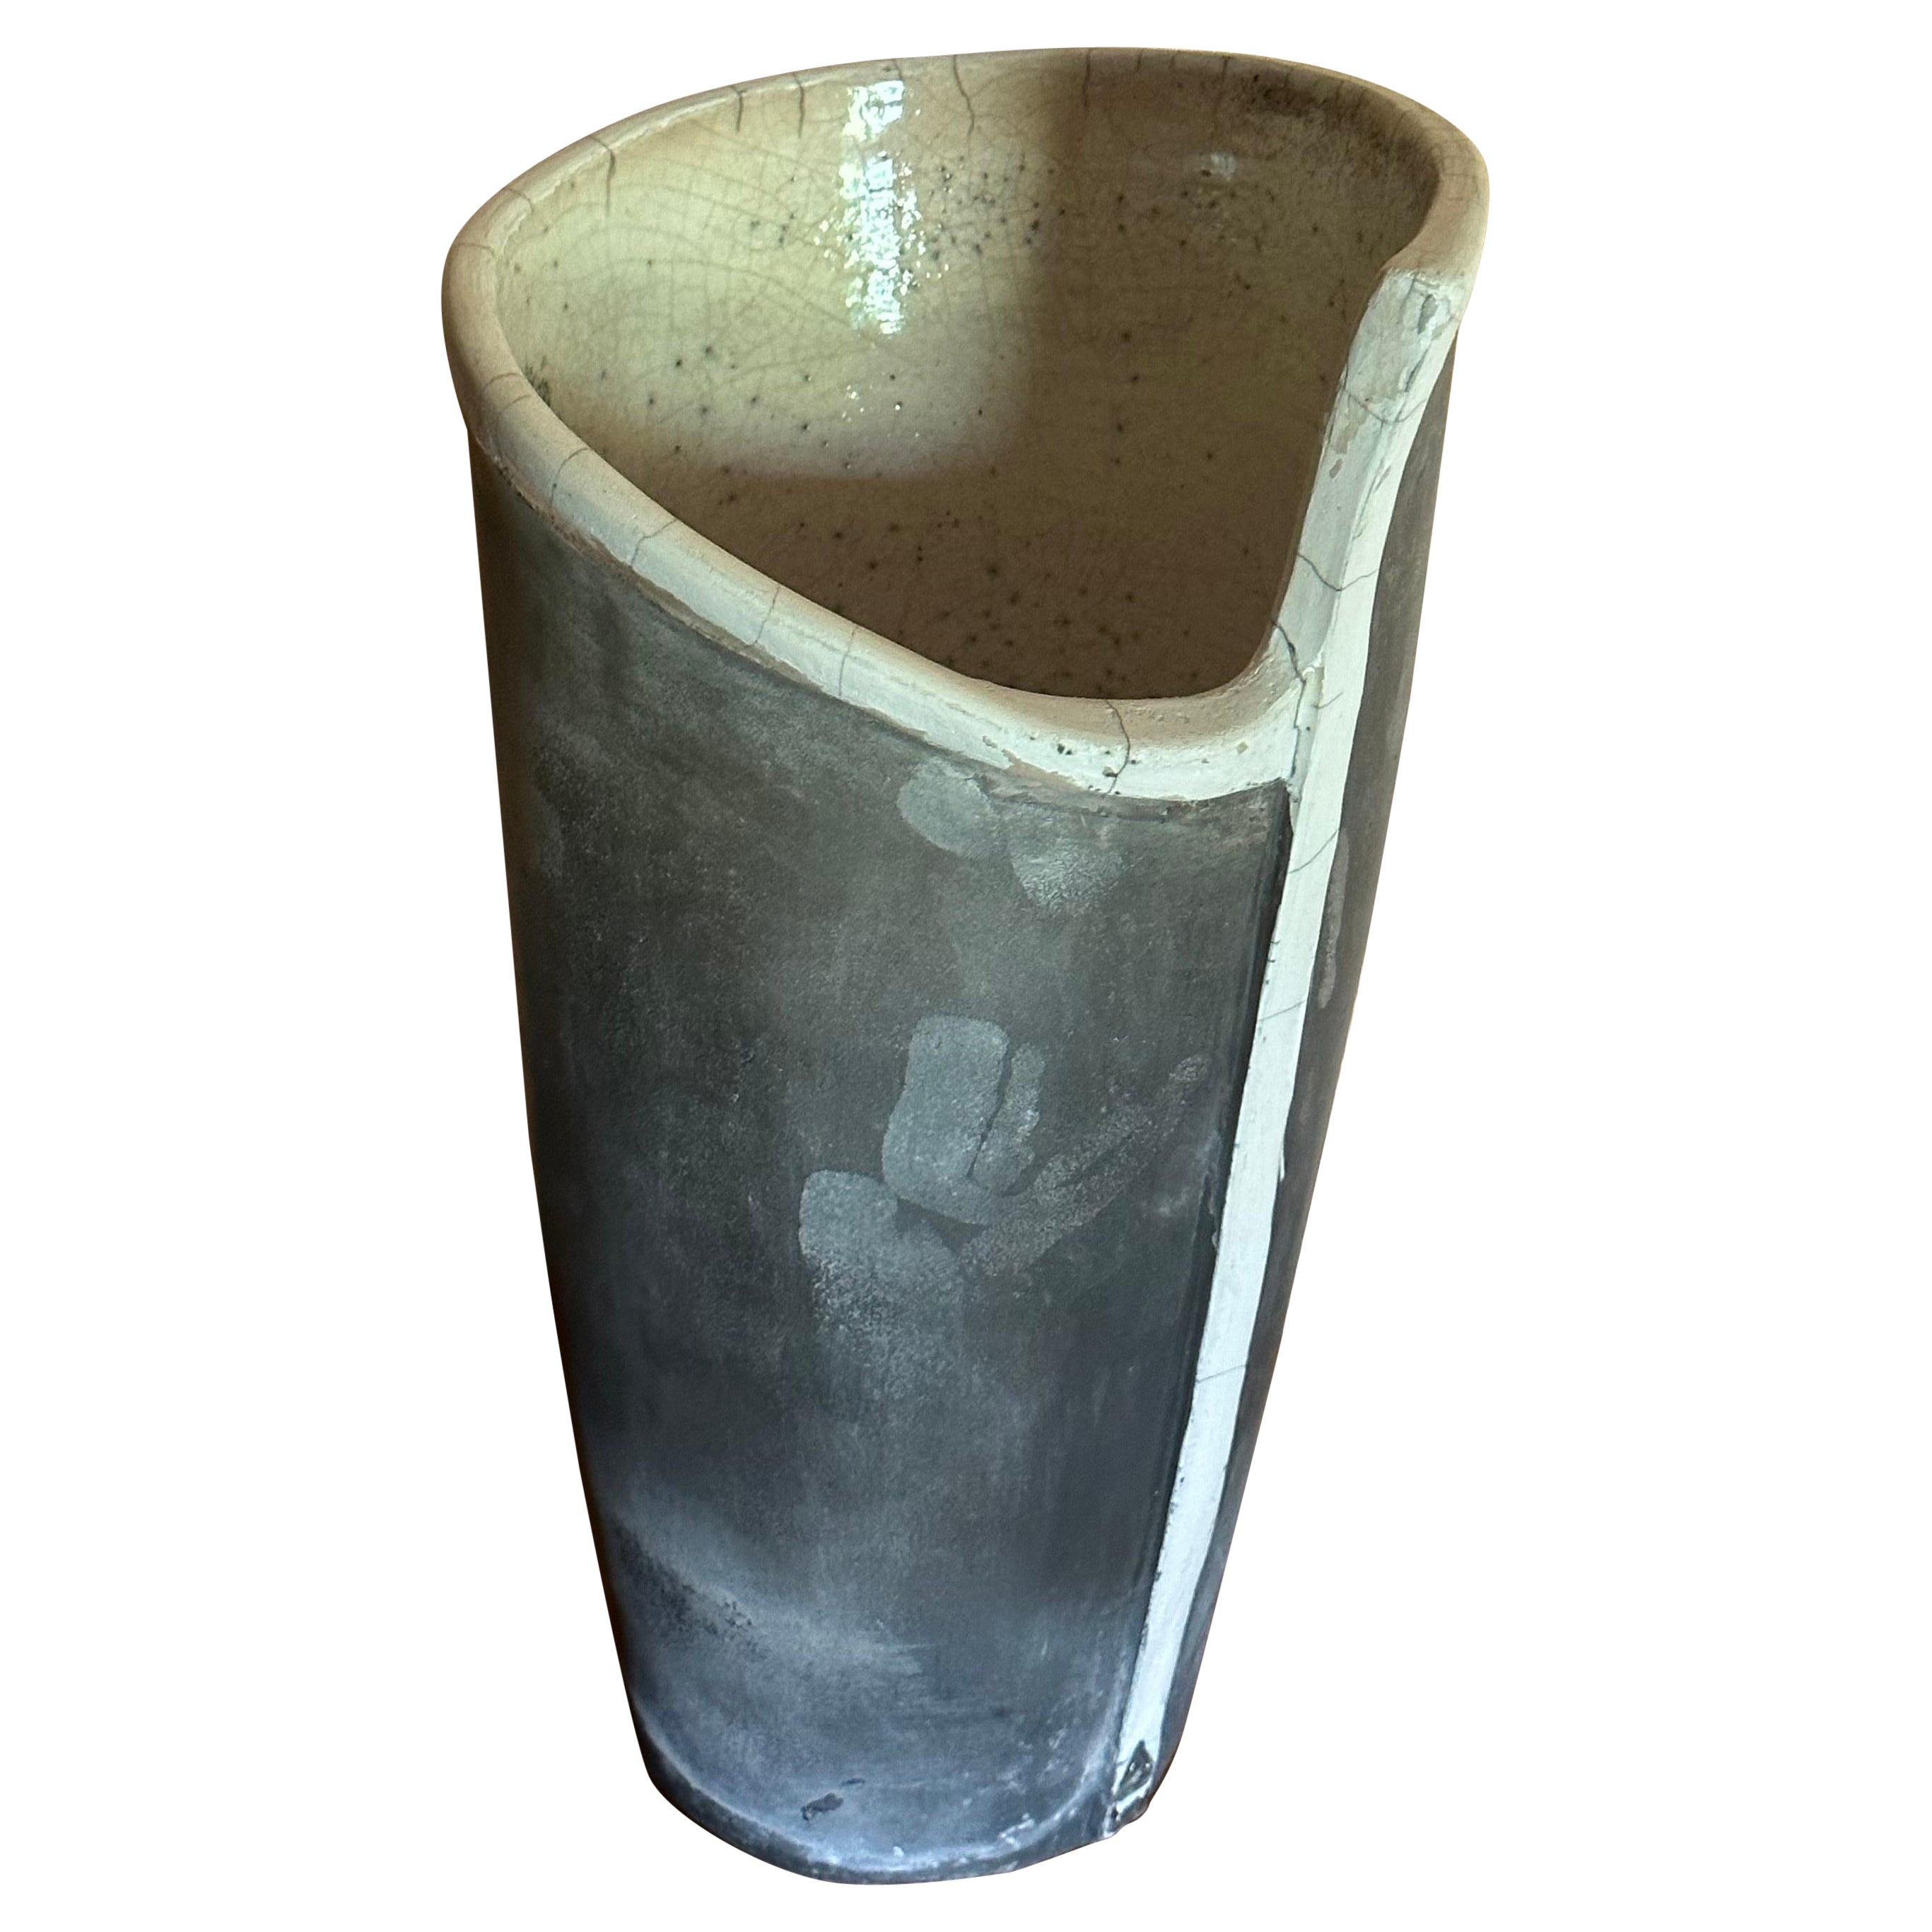 An important raku vase